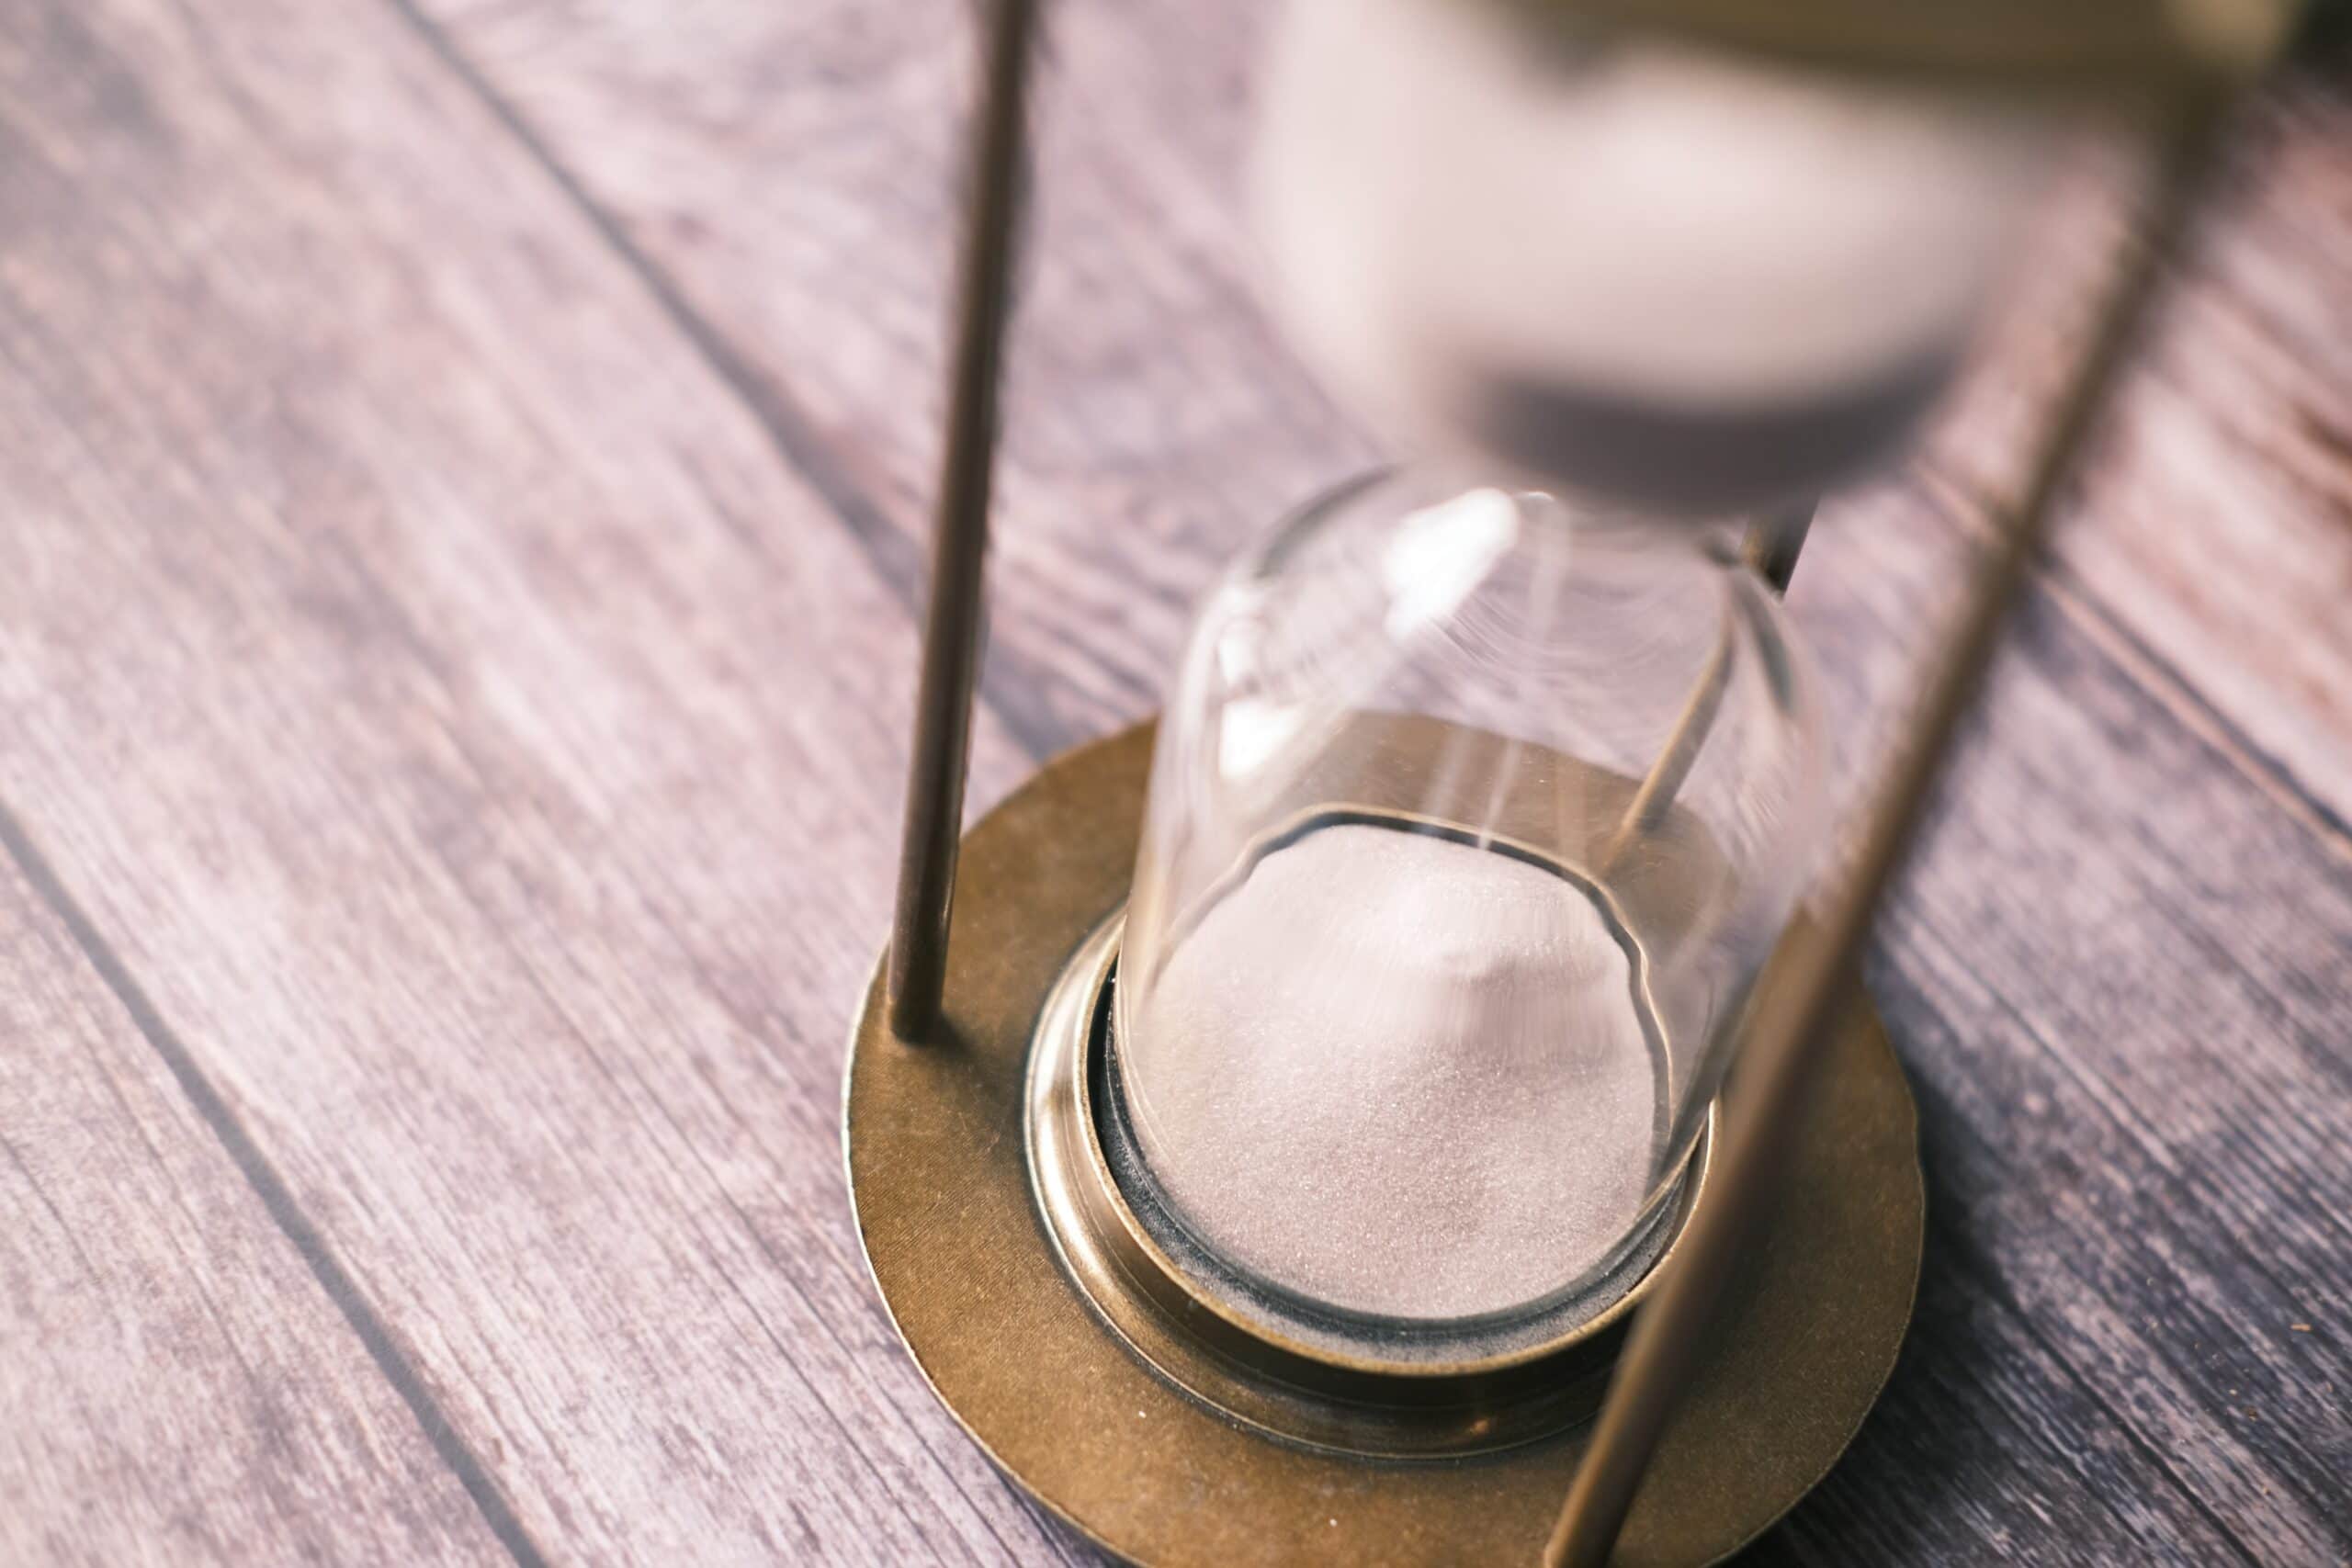 Salt timer to track your deadline progress